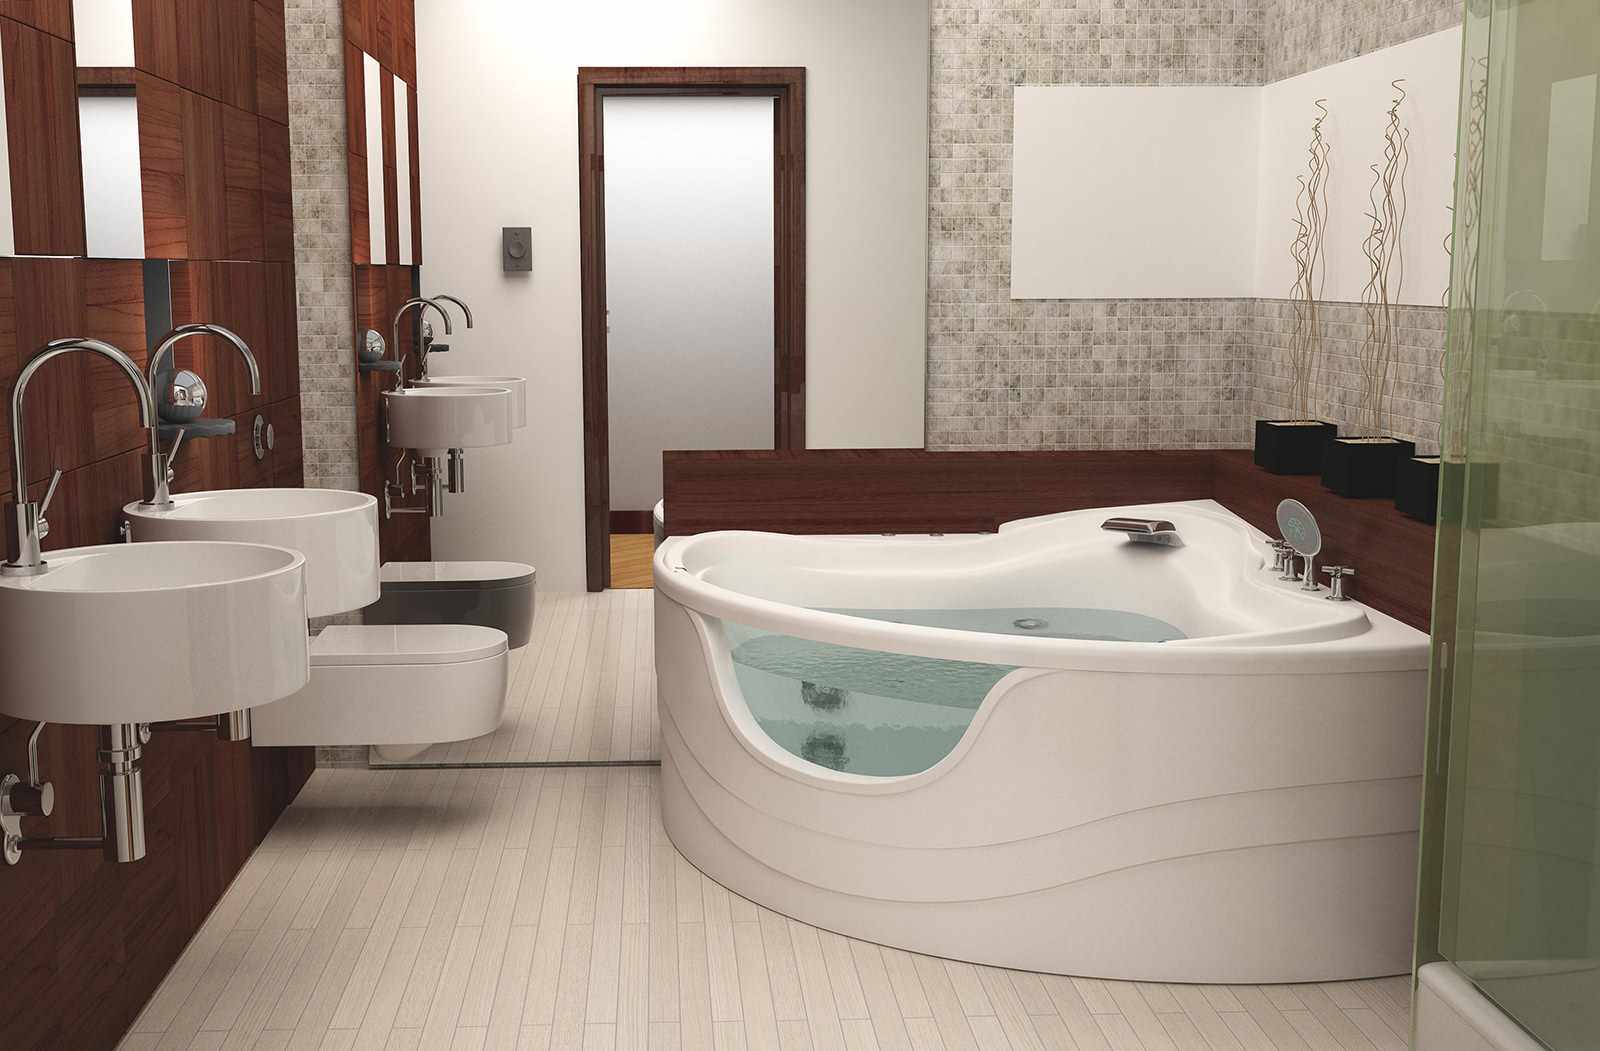 גרסה של העיצוב הלא שגרתי של חדר האמבטיה עם אמבטיה פינתית